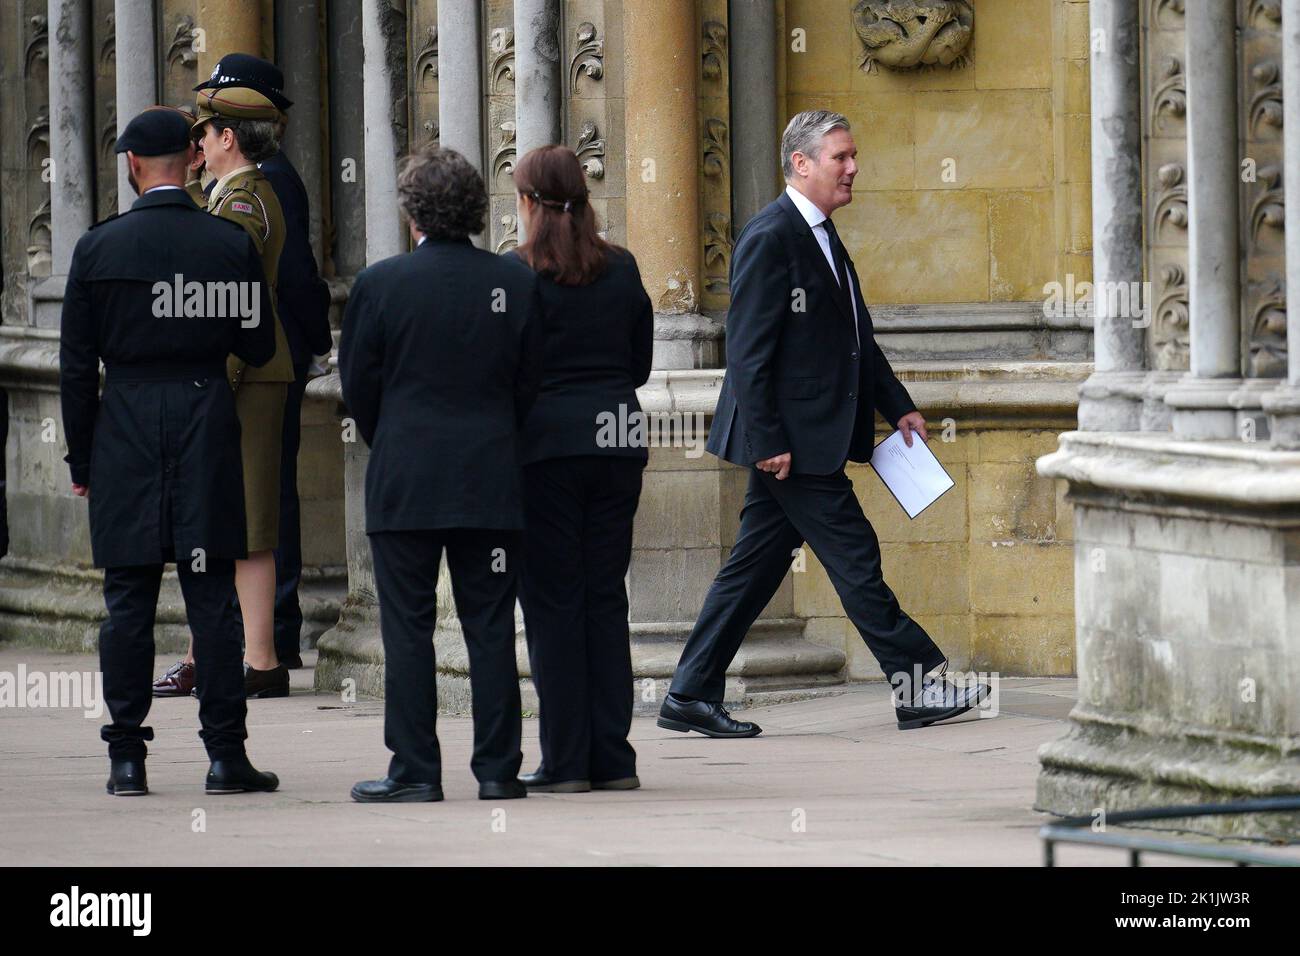 Le chef syndical Sir Keir Starmer (à droite) arrive au funéraire d'État de la reine Elizabeth II, qui s'est tenu à l'abbaye de Westminster, à Londres. Date de la photo: Lundi 19 septembre 2022. Banque D'Images